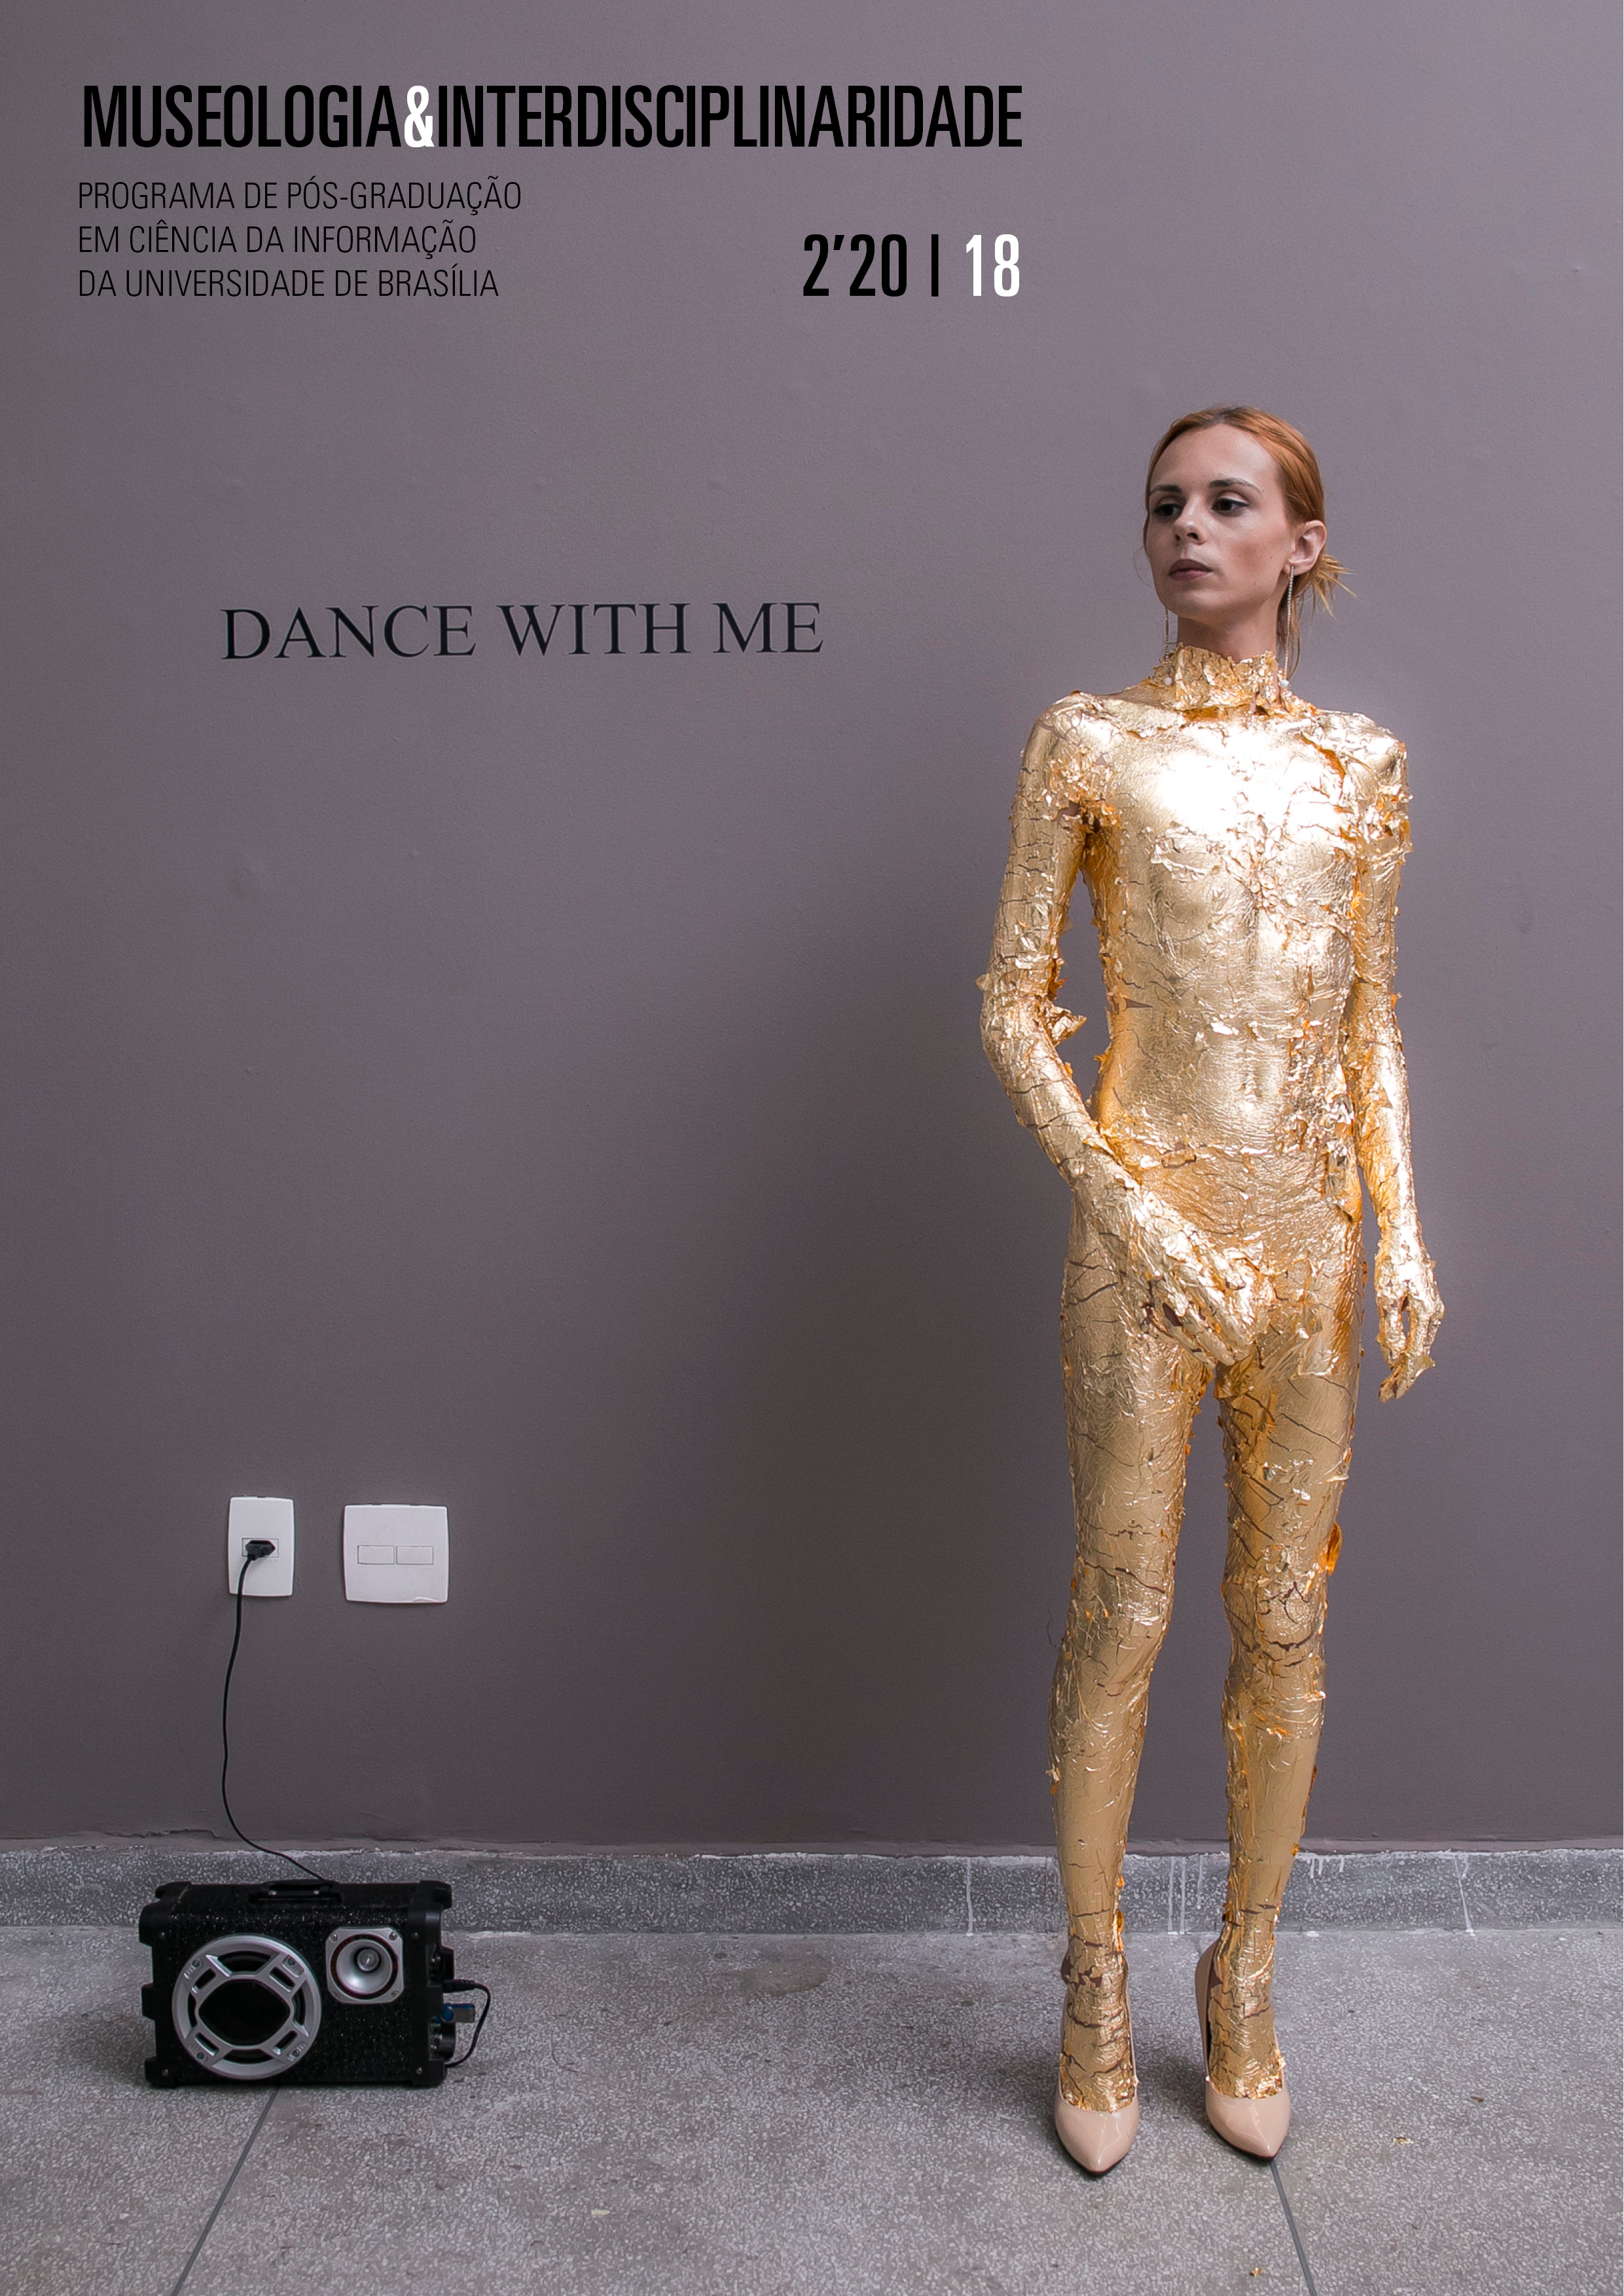 Dance with me (2018), de autoria de Élle de Bernardini. Créditos: cortesia da artista